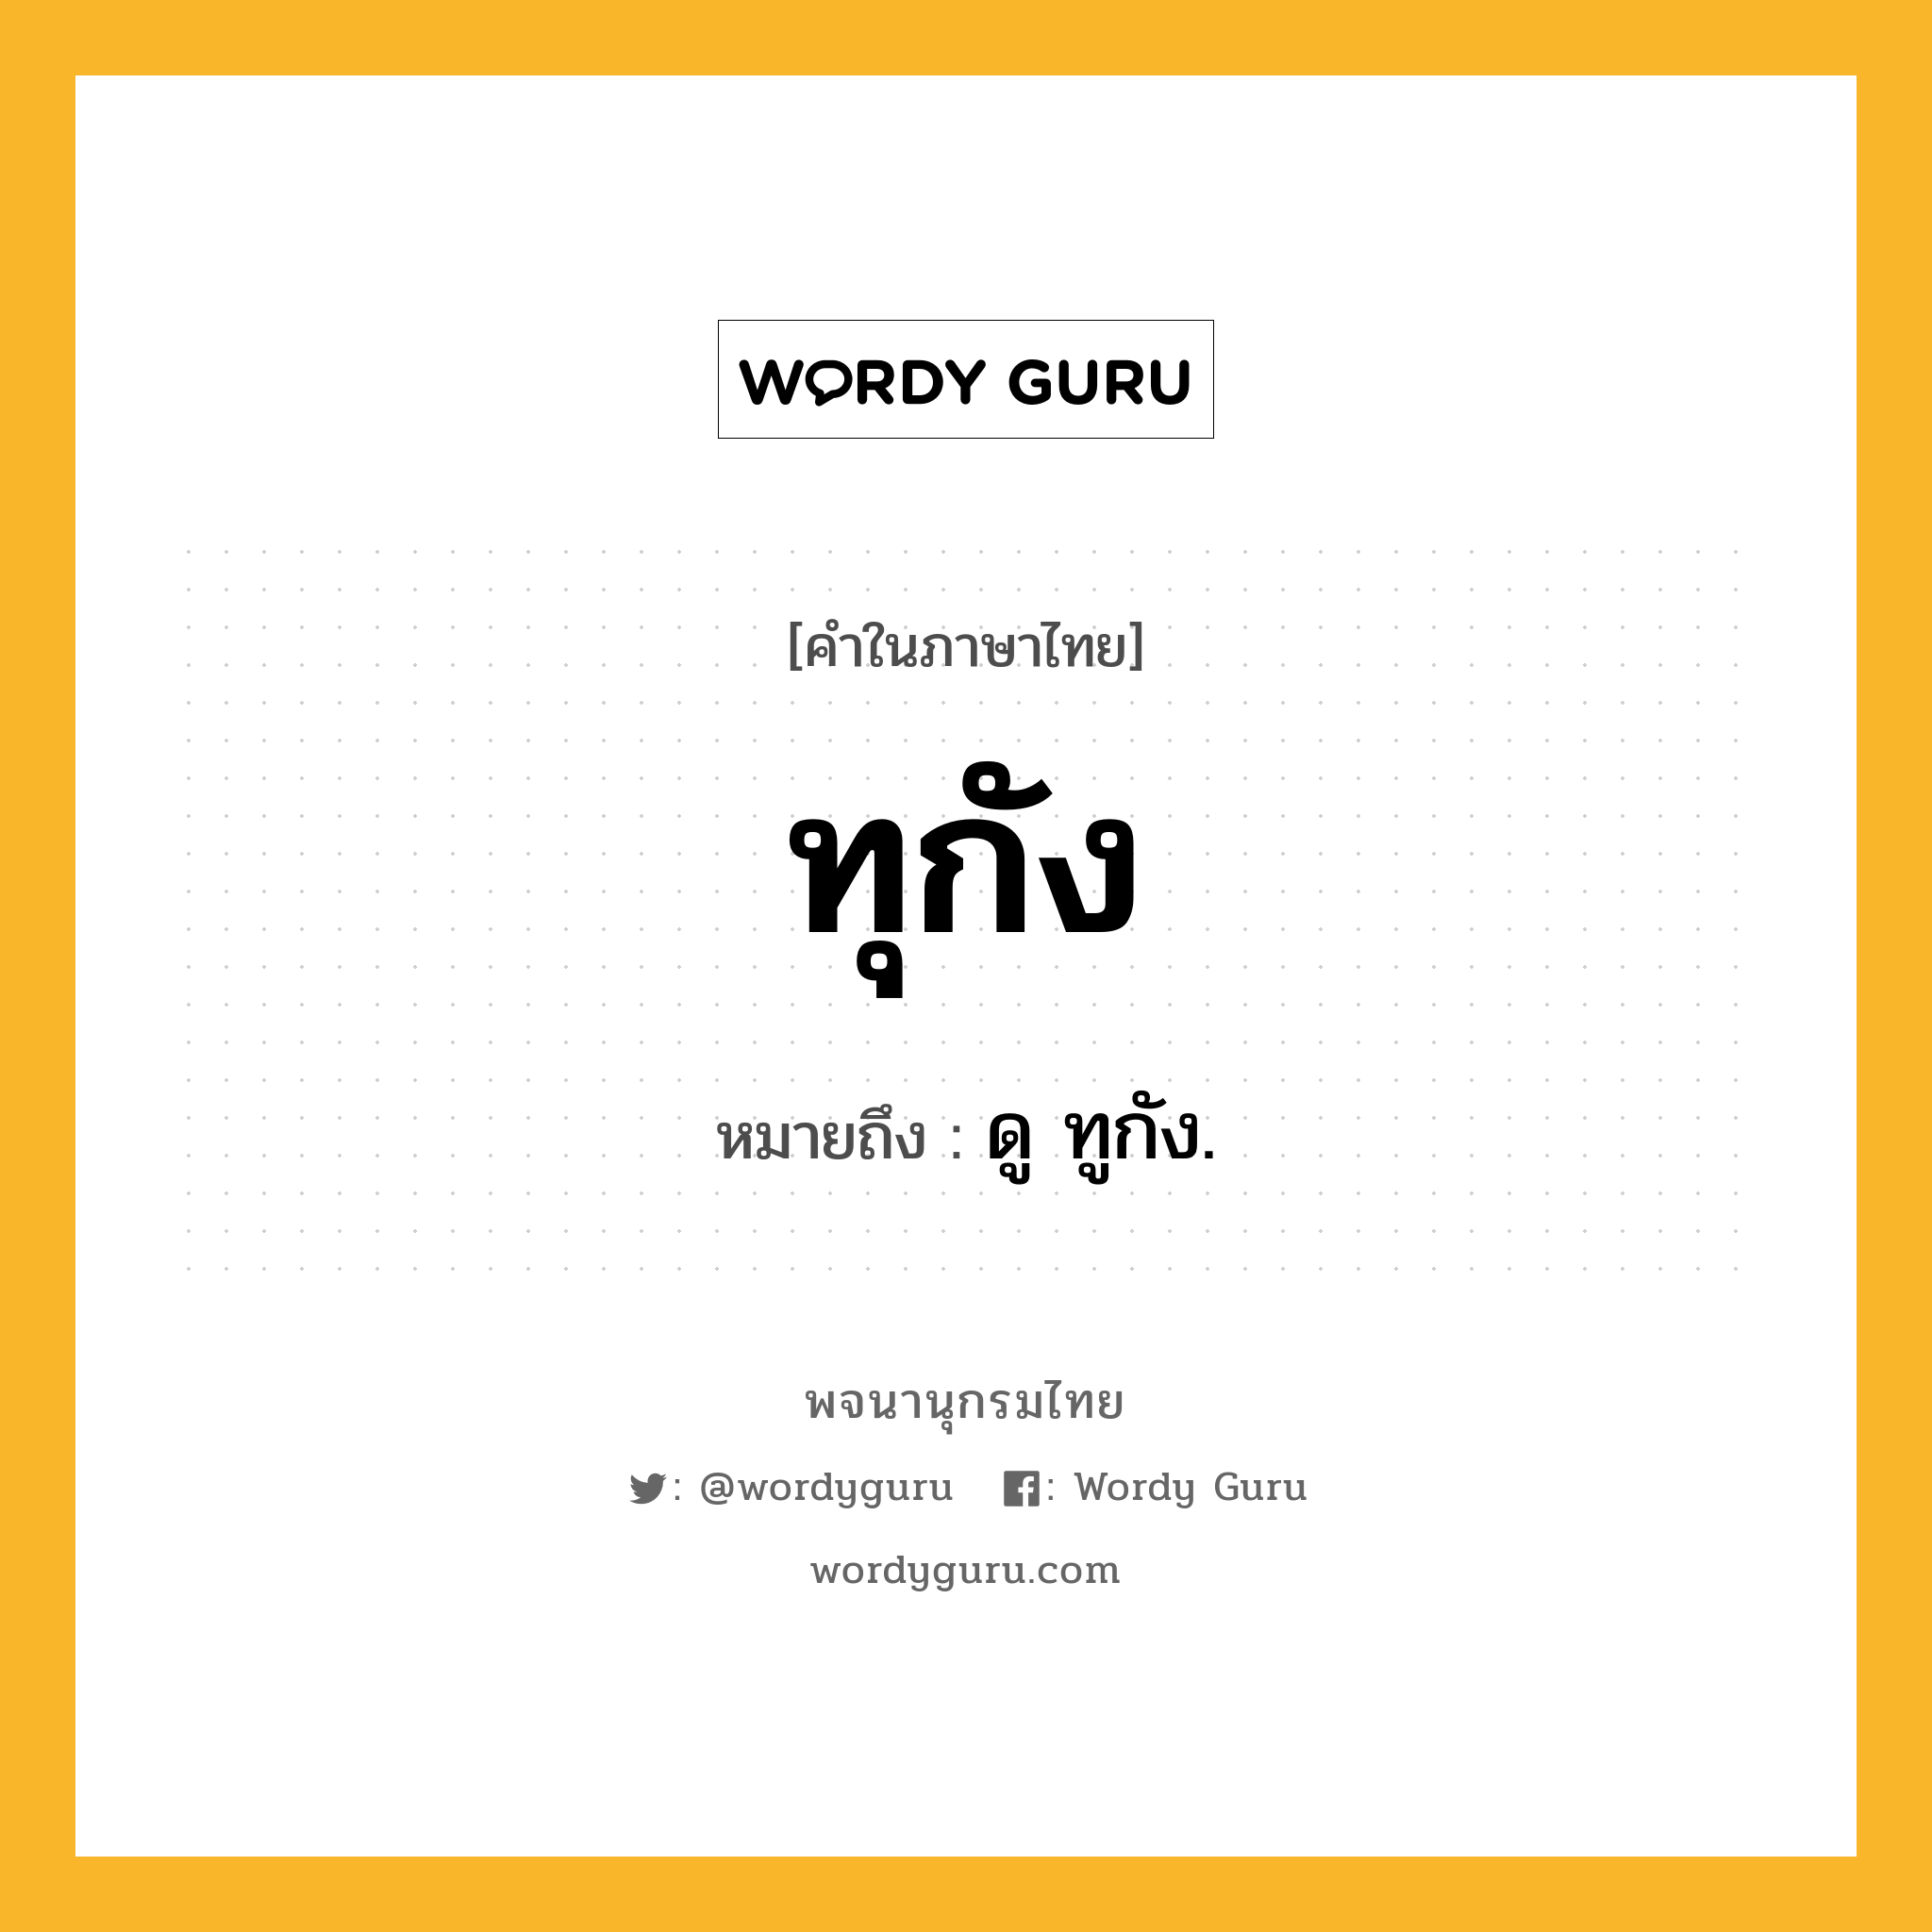 ทุกัง ความหมาย หมายถึงอะไร?, คำในภาษาไทย ทุกัง หมายถึง ดู ทูกัง.